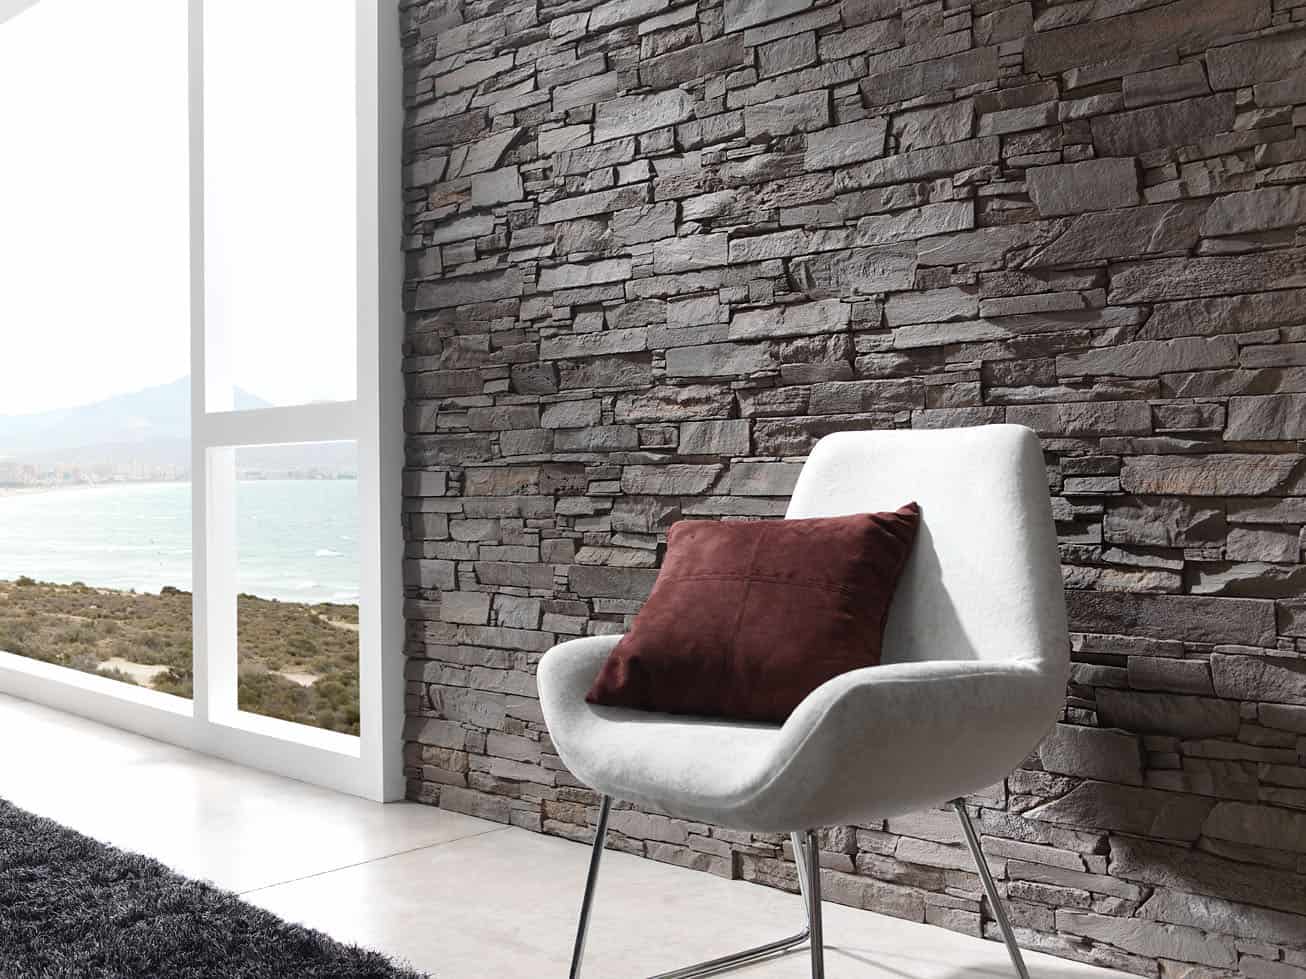 Renueva tus paredes con los paneles decorativos de Panel Piedra